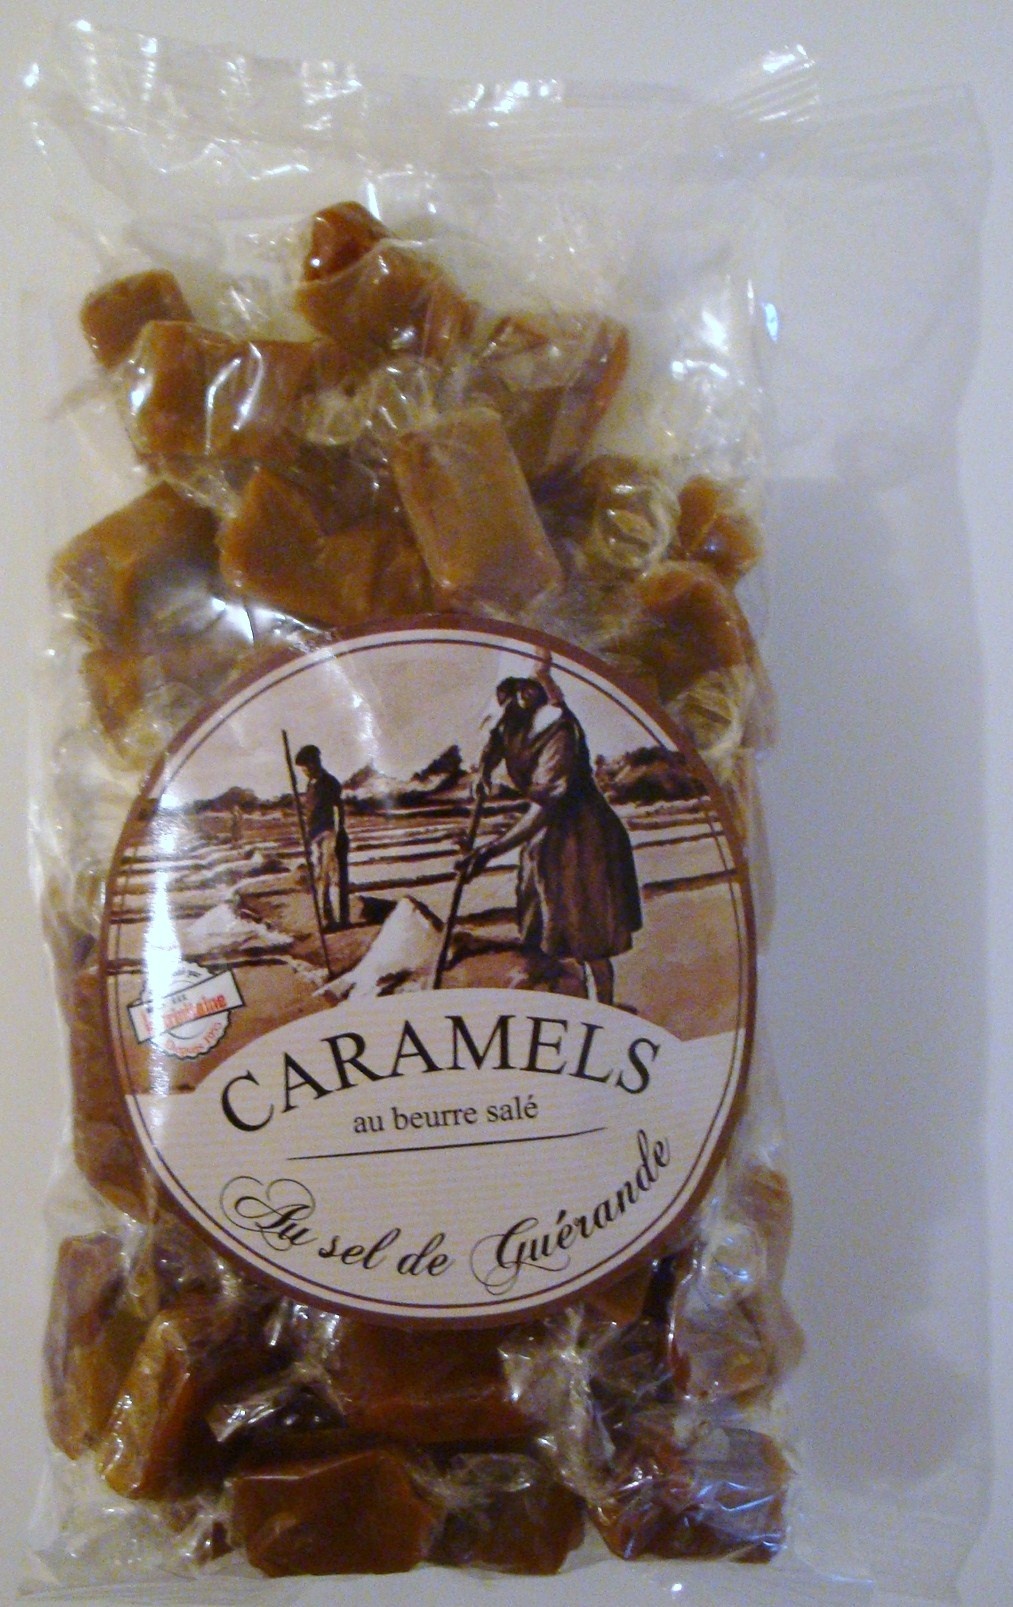 Caramels au beurre salé - Product - fr